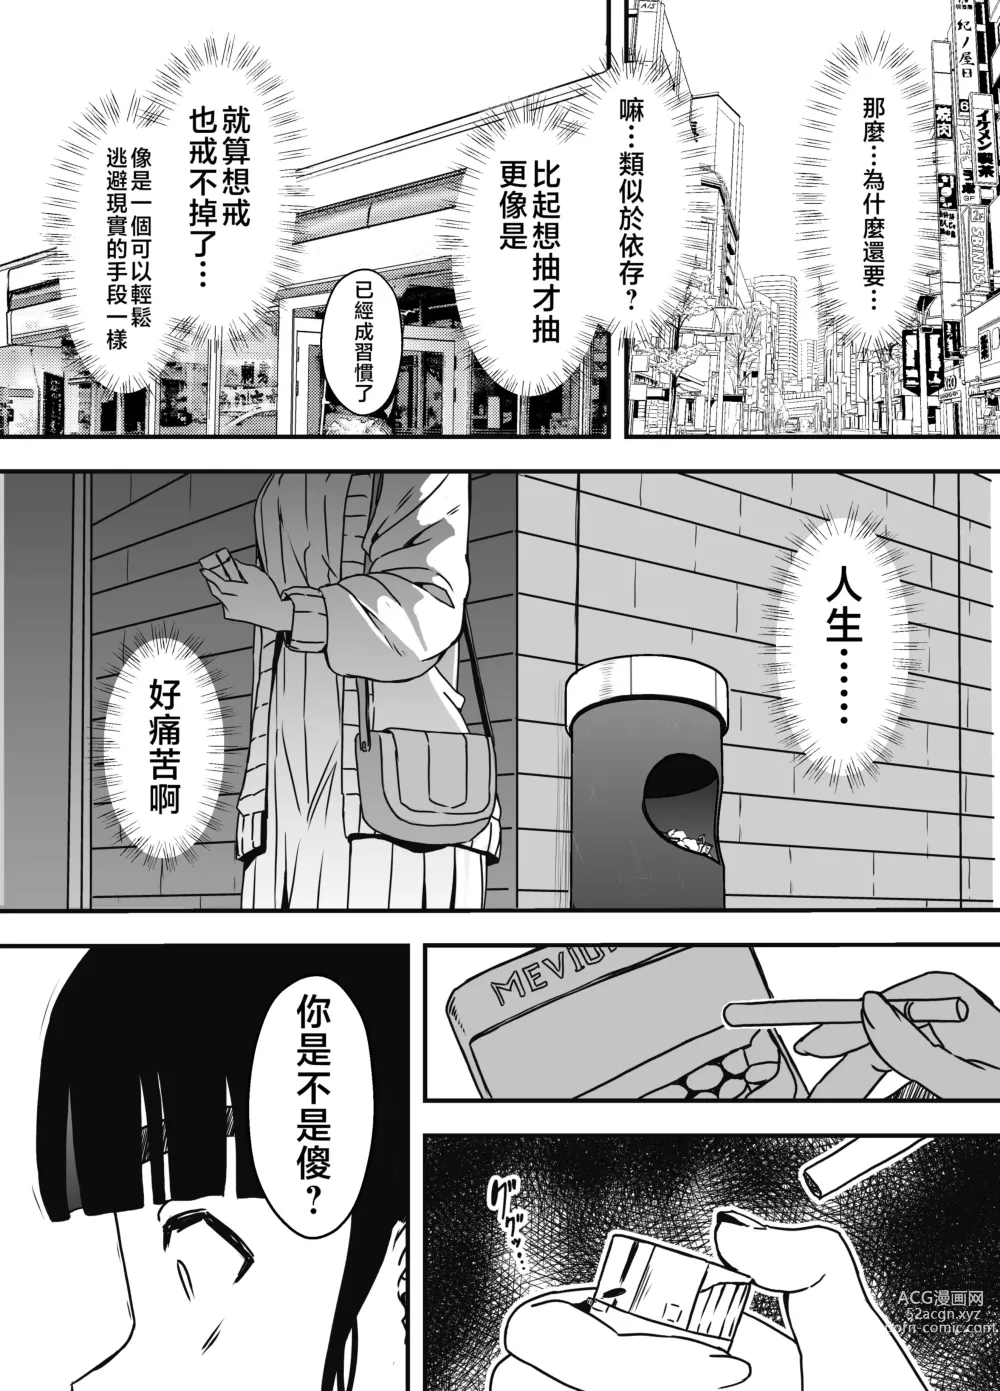 Page 63 of doujinshi Giri no Ane to no 7-kakan Seikatsu - 5